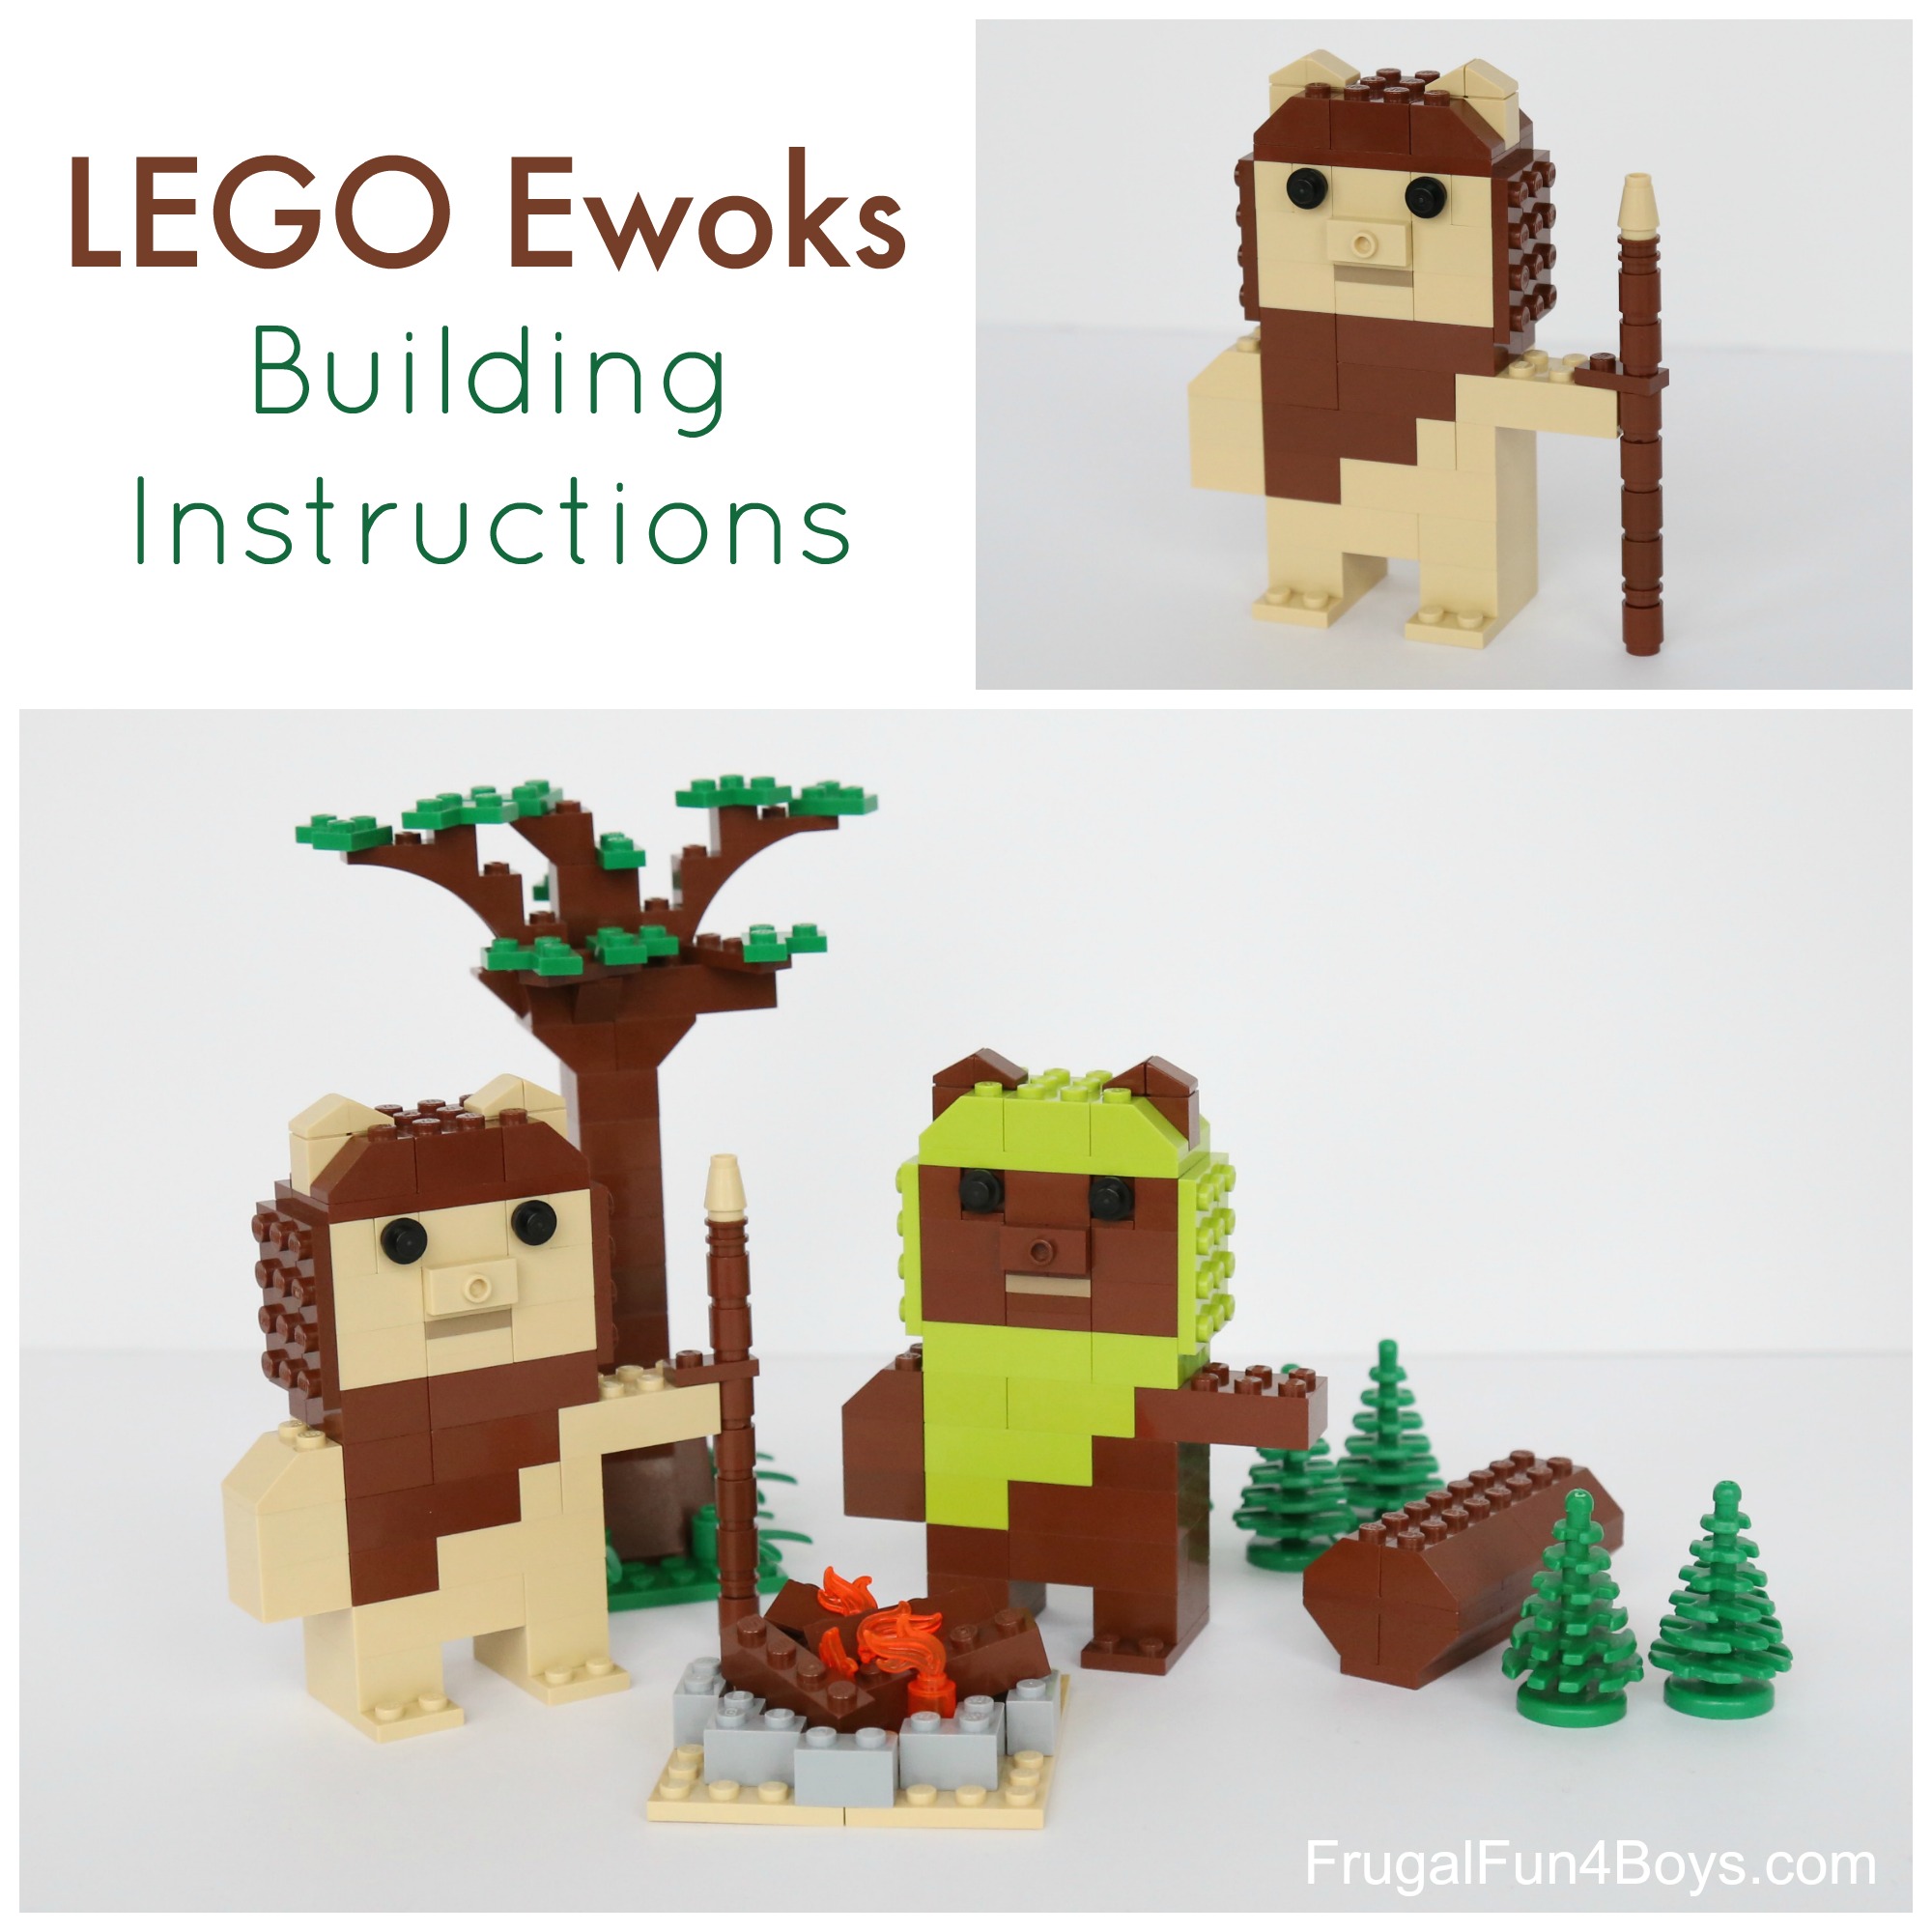 LEGO Ewoks Building Instructions